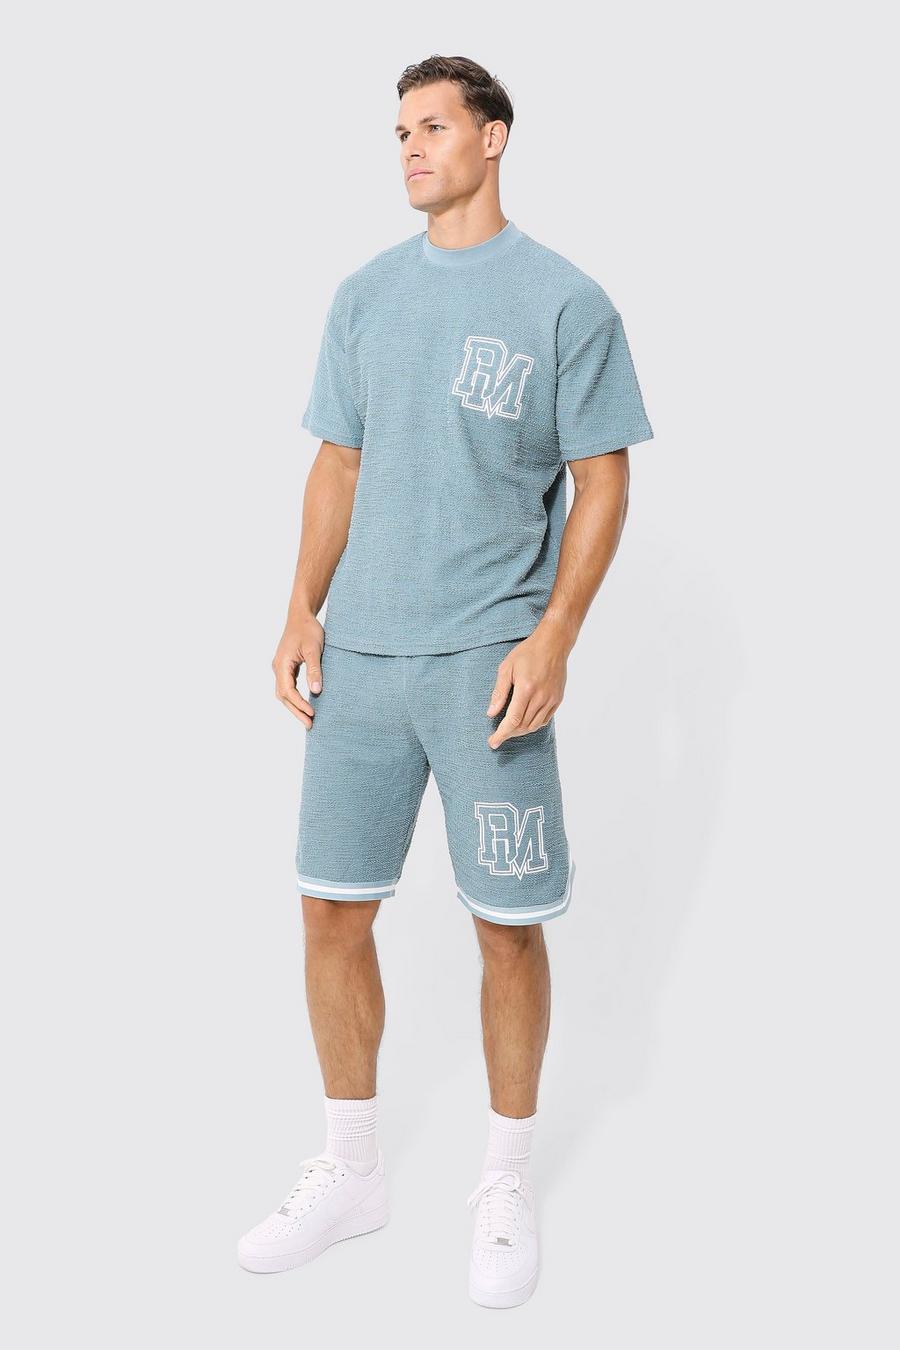 Conjunto Tall oversize de pantalón corto y camiseta texturizada con estampado BM, Light blue